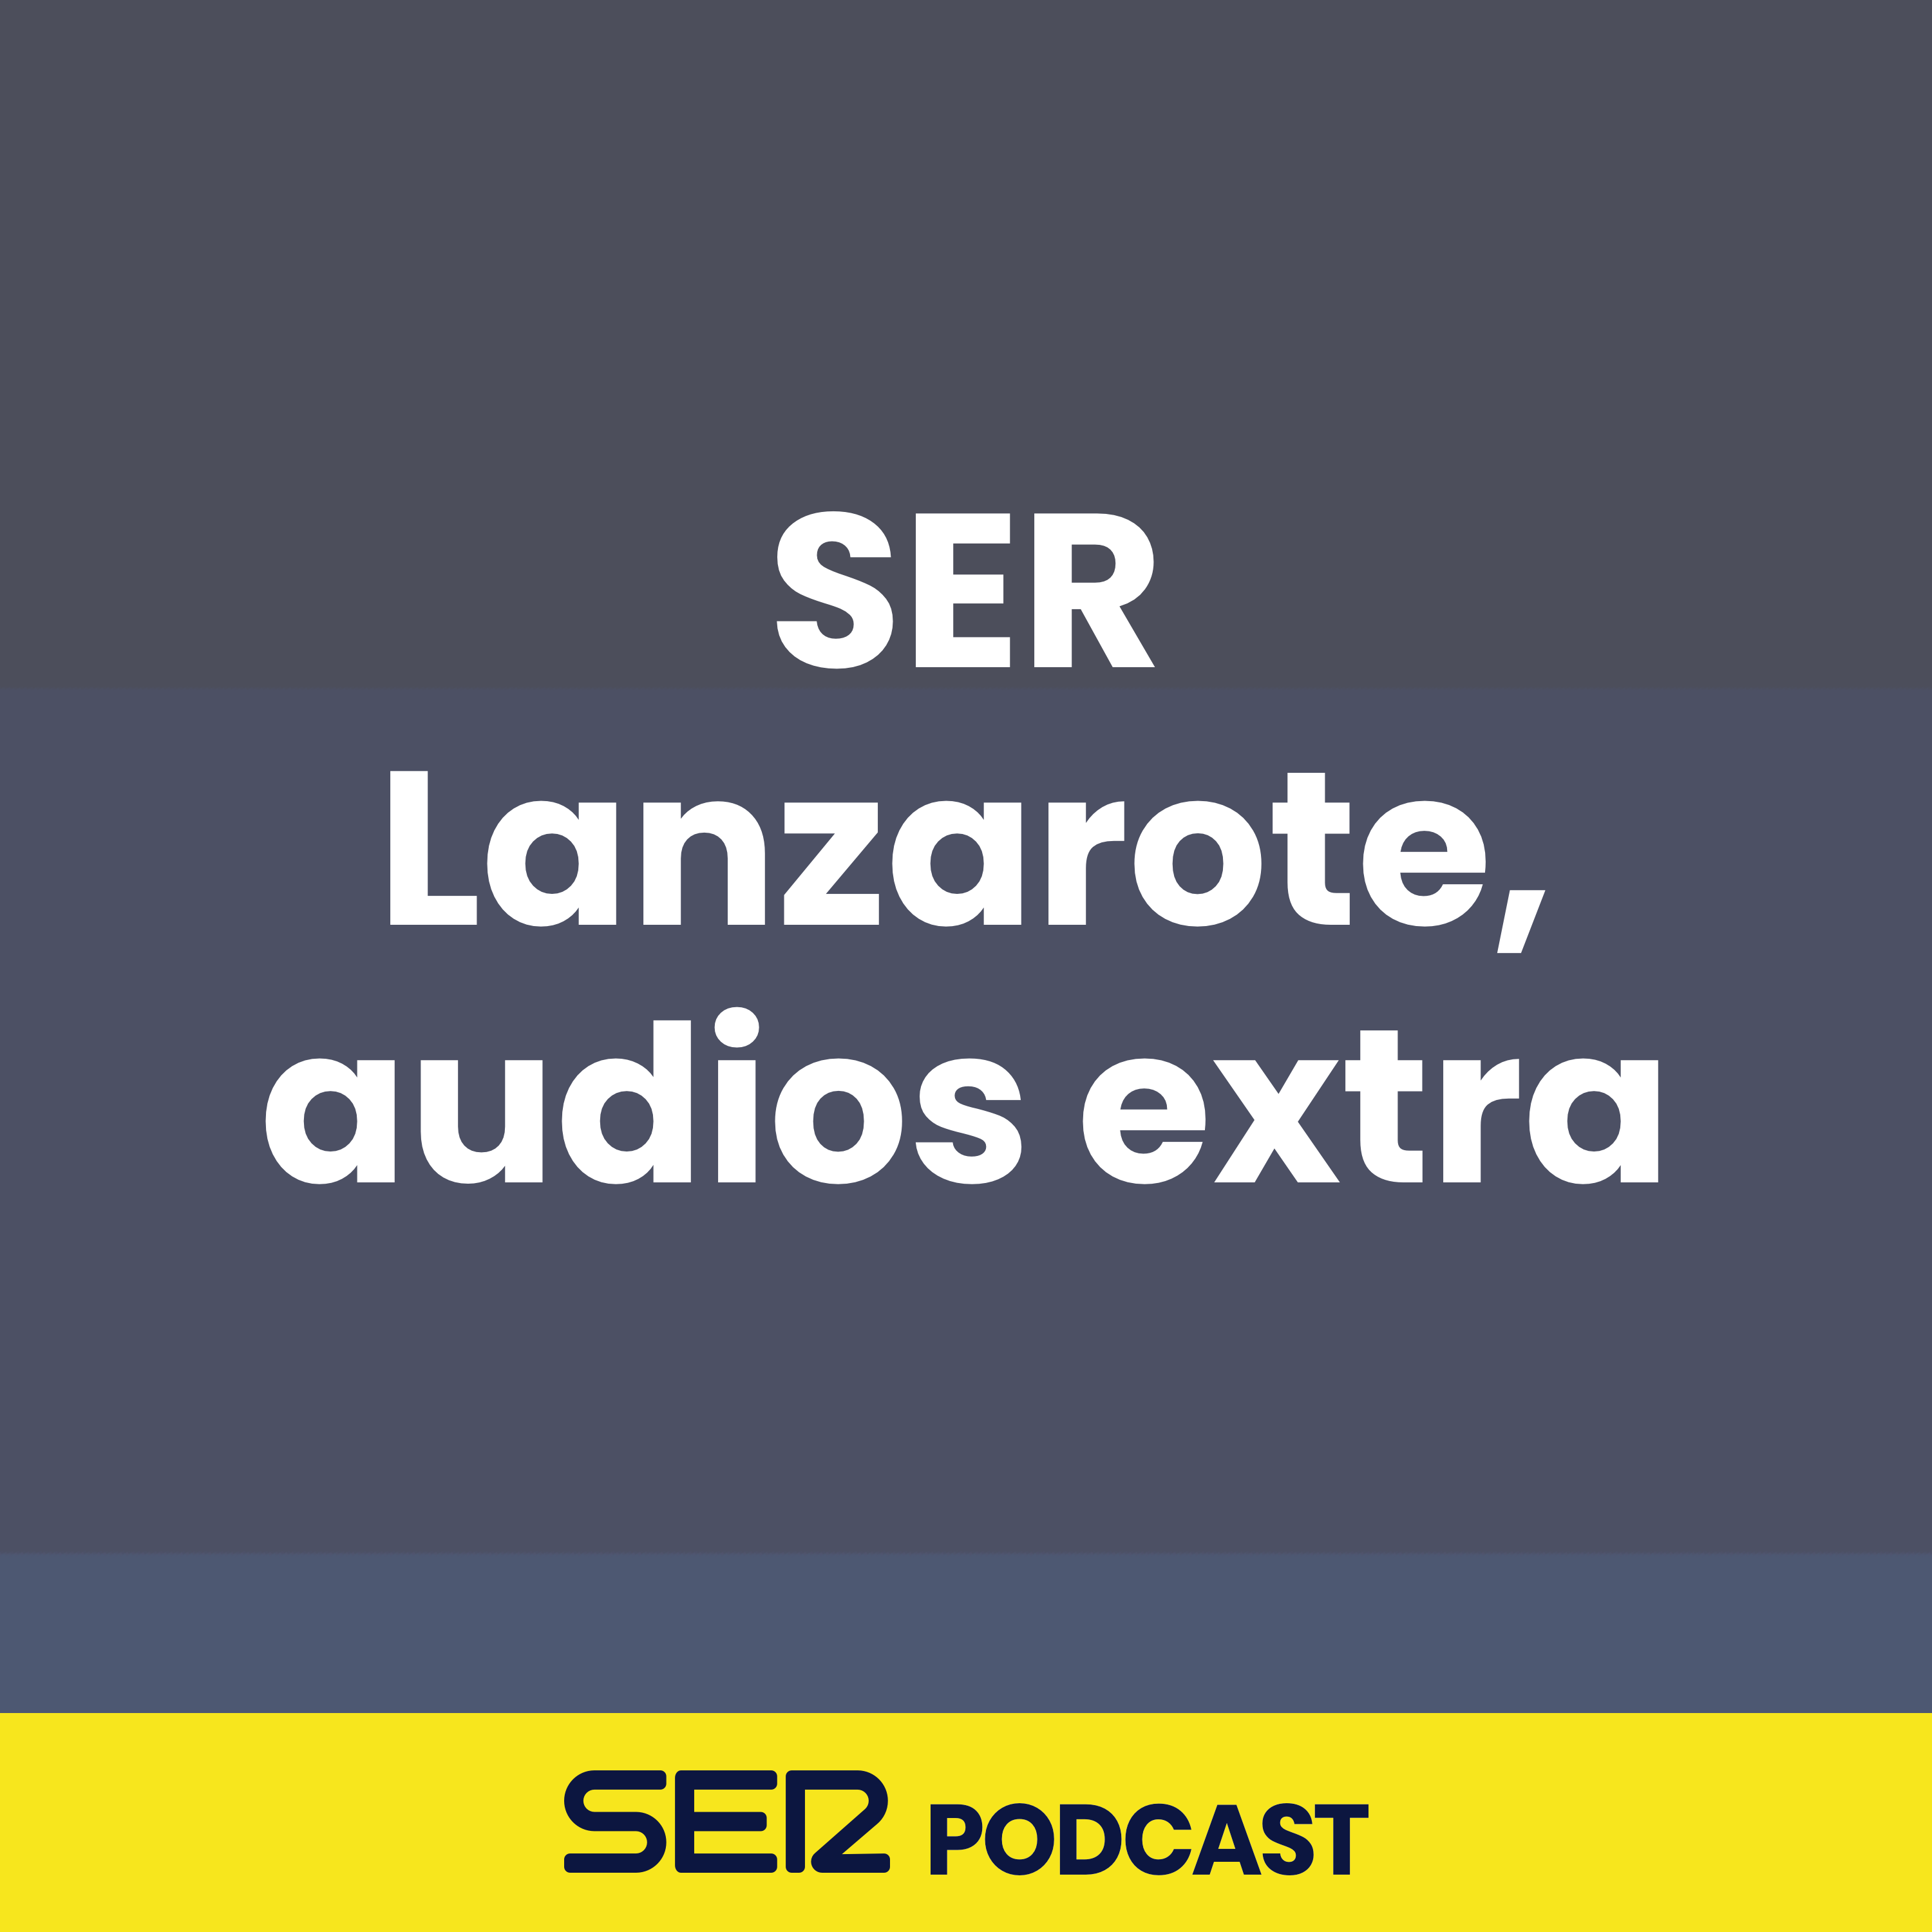 SER Lanzarote, audios extra